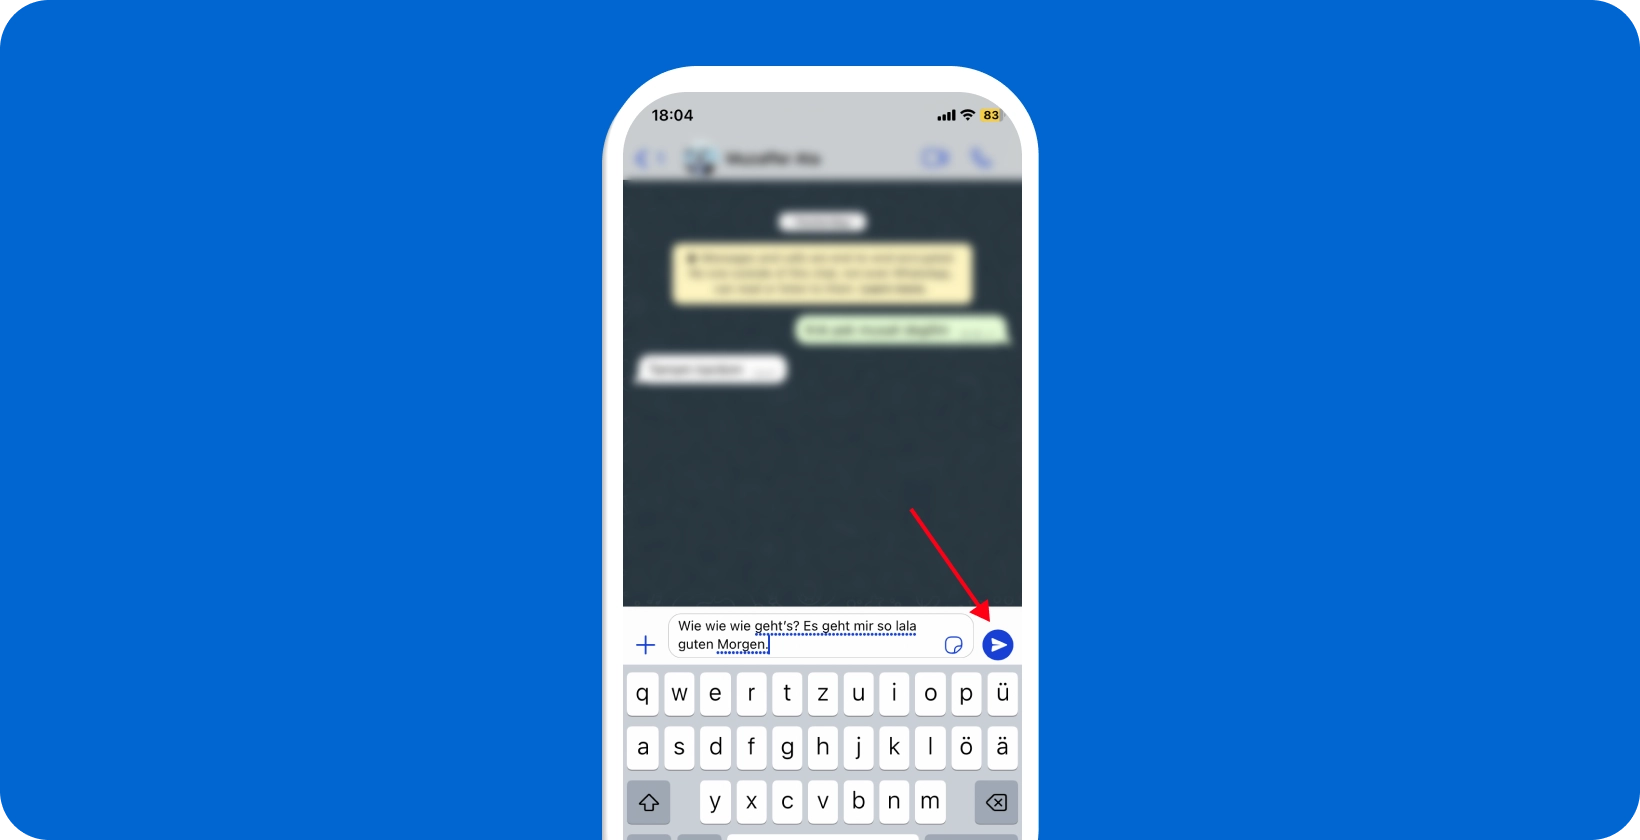 Tela do smartphone mostrando o recurso de ditado de voz do WhatsApp sendo usado, com um ícone de microfone realçado.